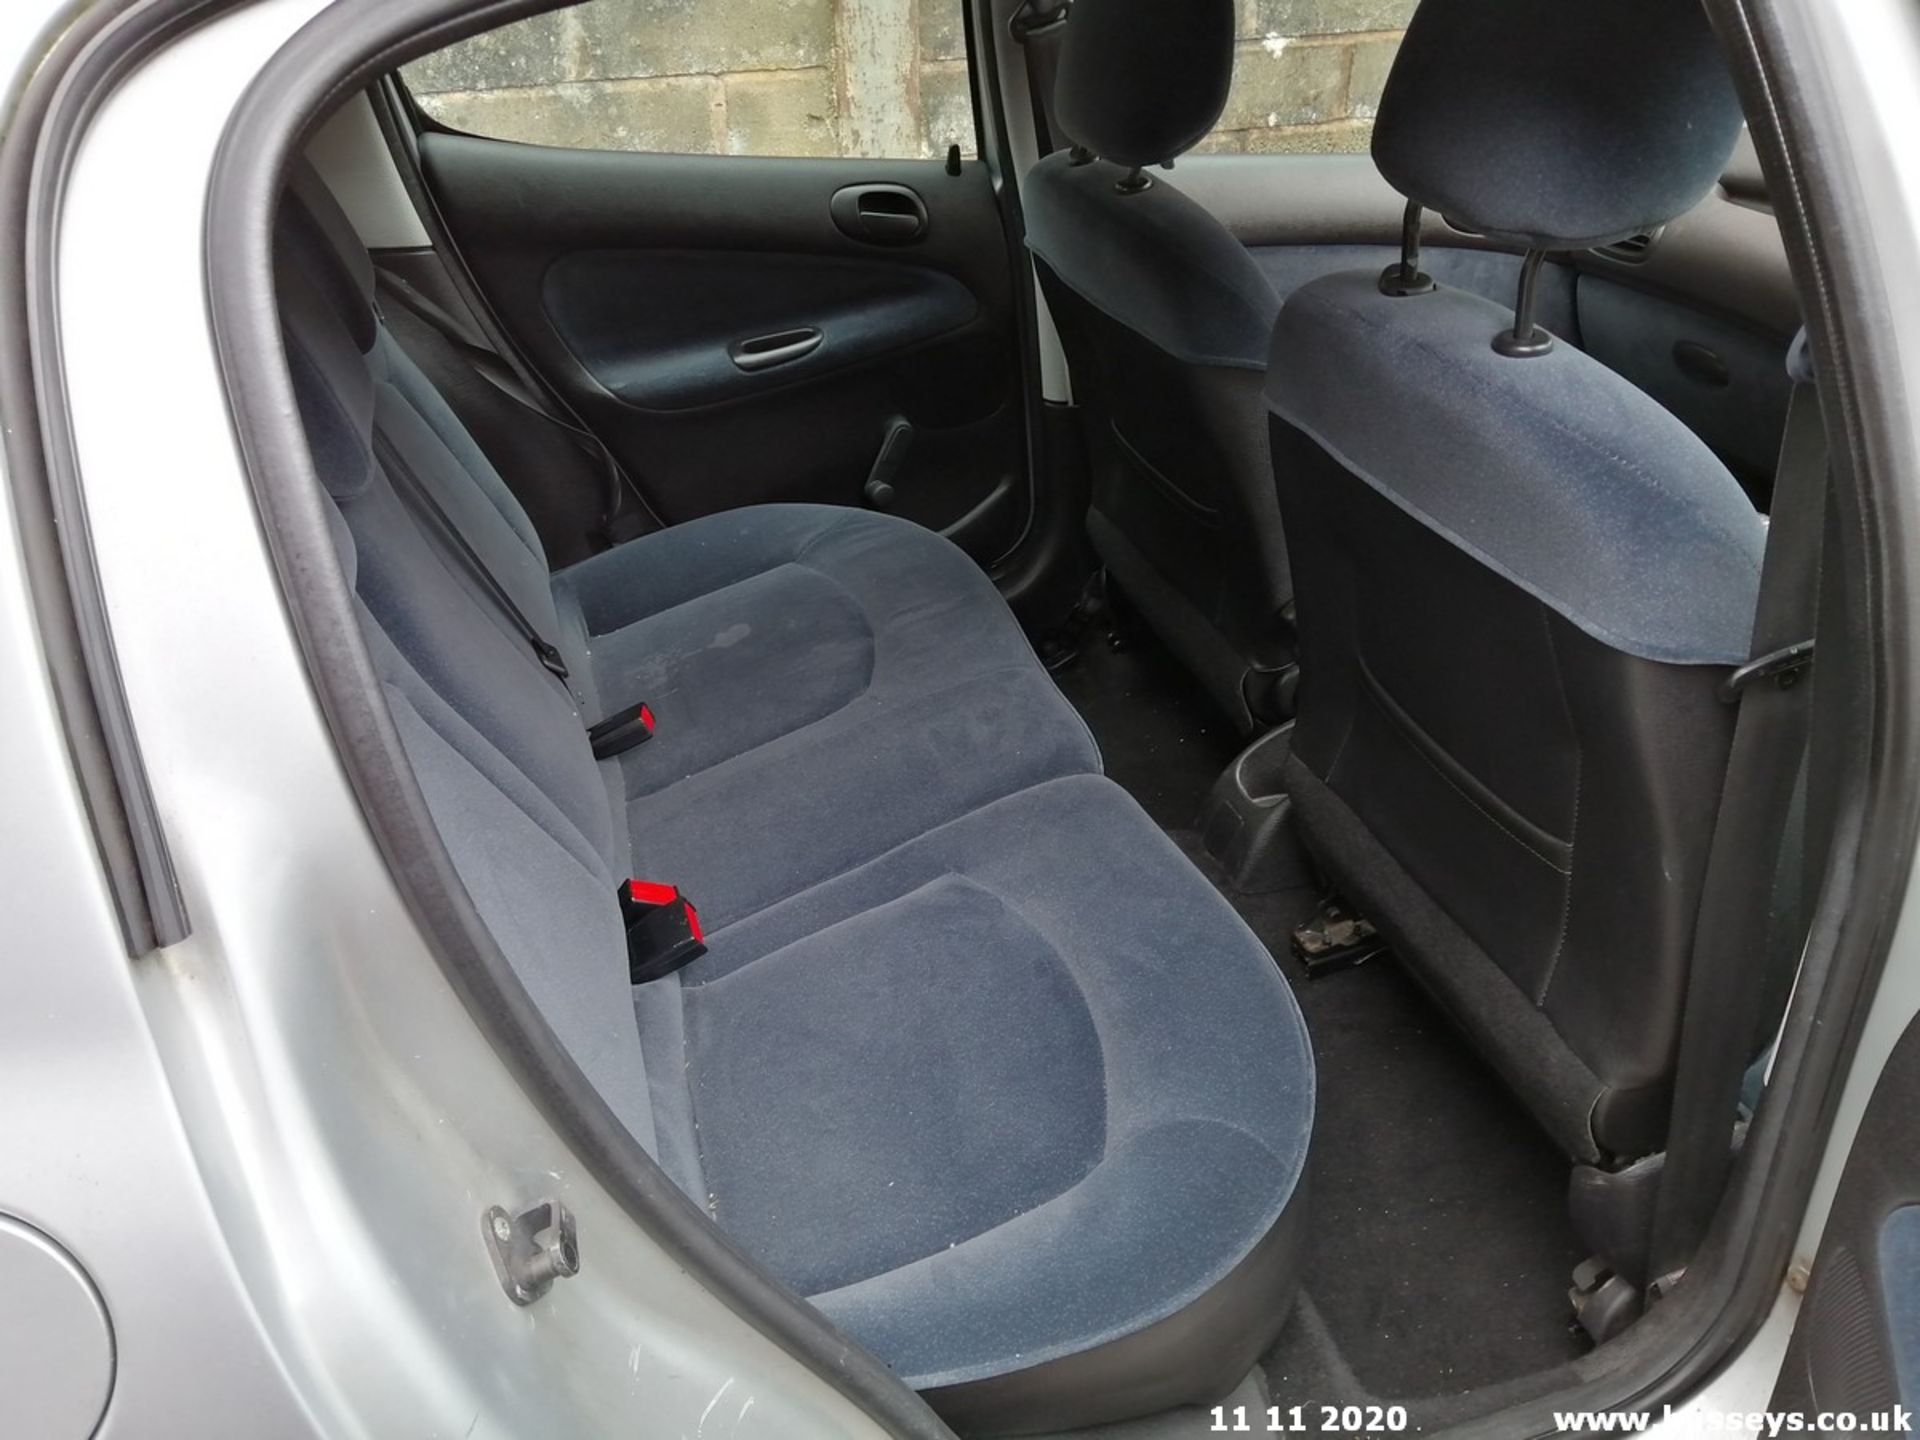 02/02 PEUGEOT 206 GLX - 1587cc 5dr Hatchback (Silver, 56k) - Image 12 of 12